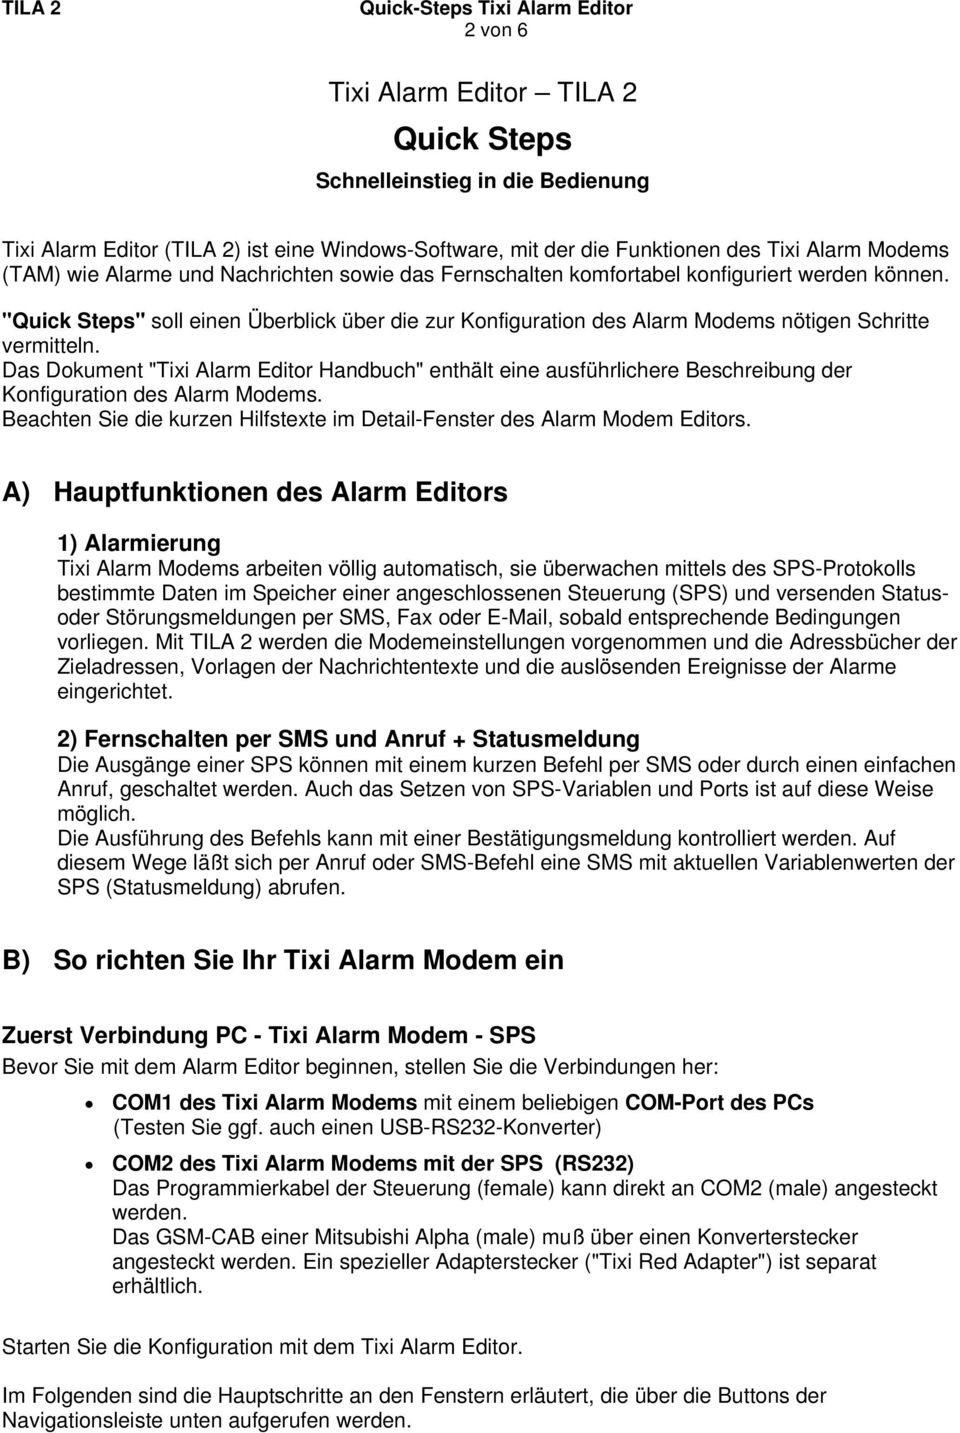 Das Dokument "Tixi Alarm Editor Handbuch" enthält eine ausführlichere Beschreibung der Konfiguration des Alarm Modems. Beachten Sie die kurzen Hilfstexte im Detail-Fenster des Alarm Modem Editors.